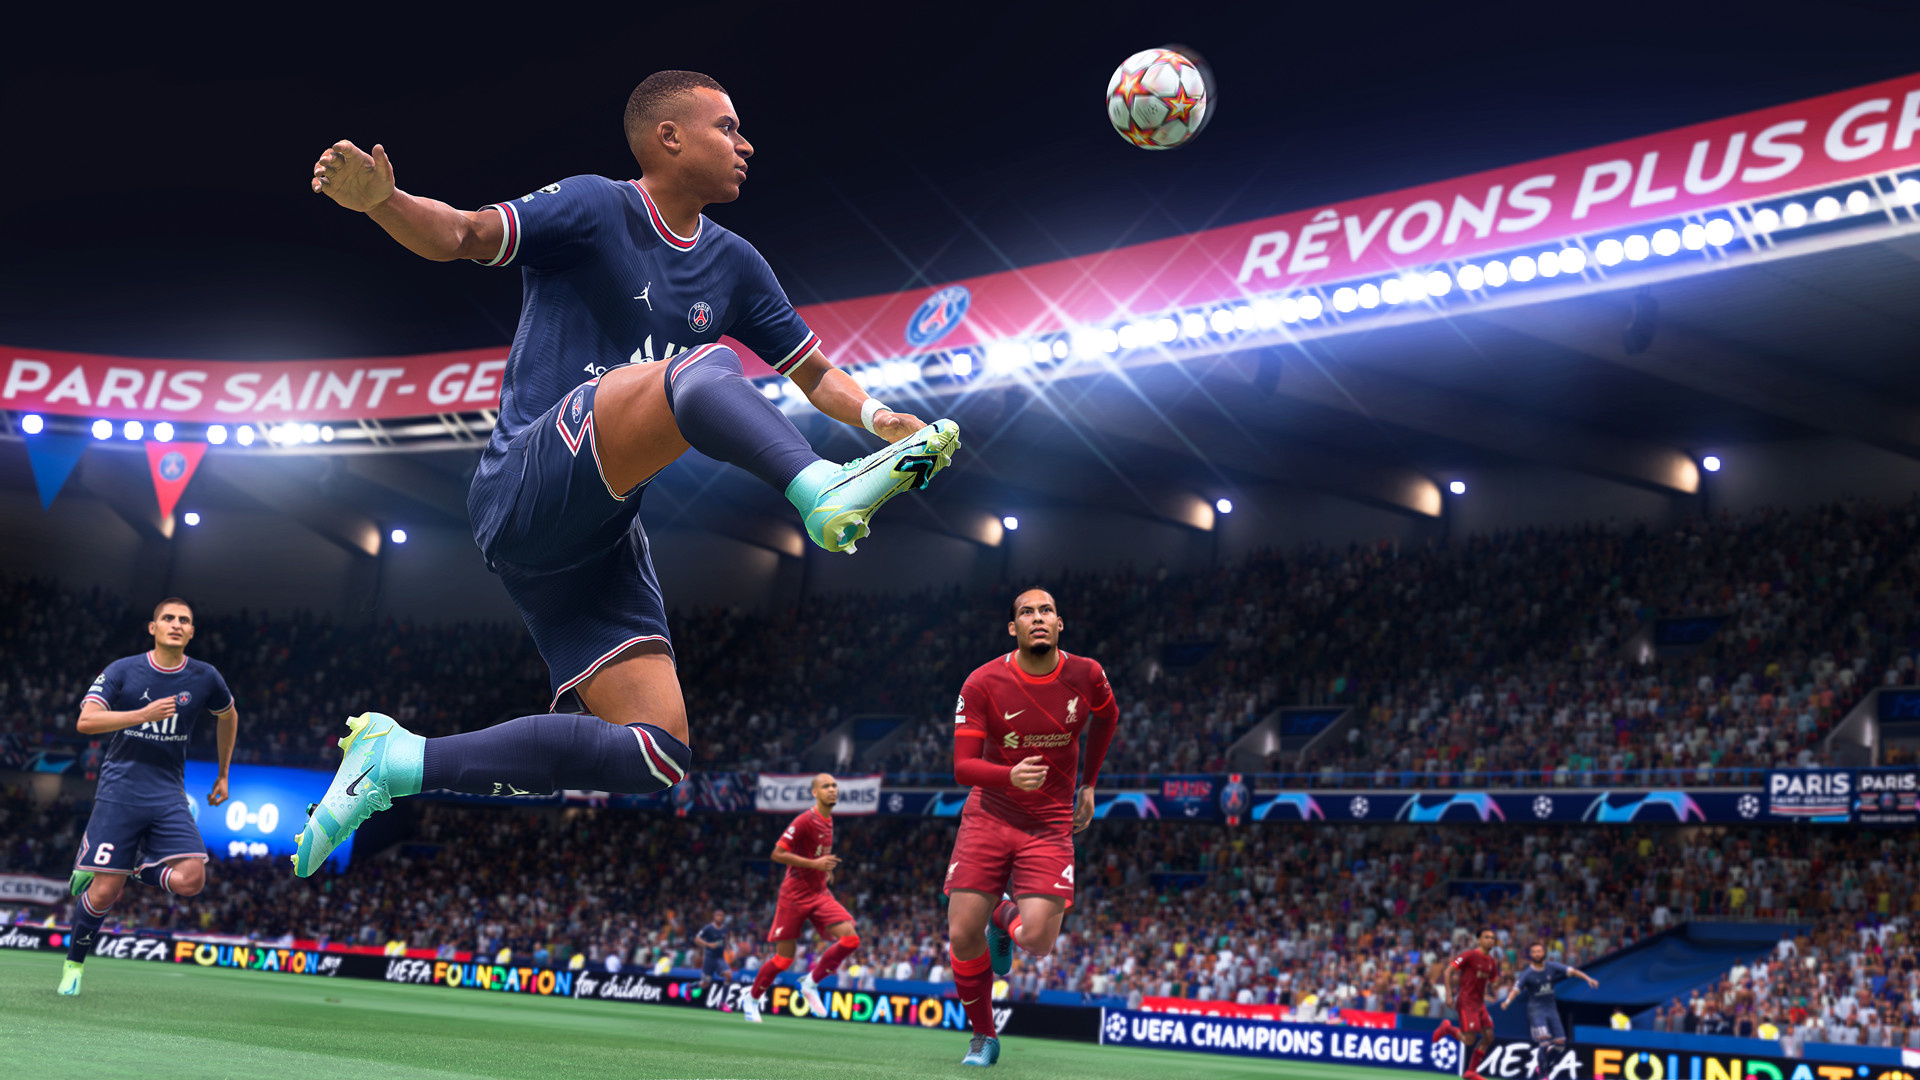 Прямое графическое сравнение FIFA 21 и FIFA 22 – велика ли разница